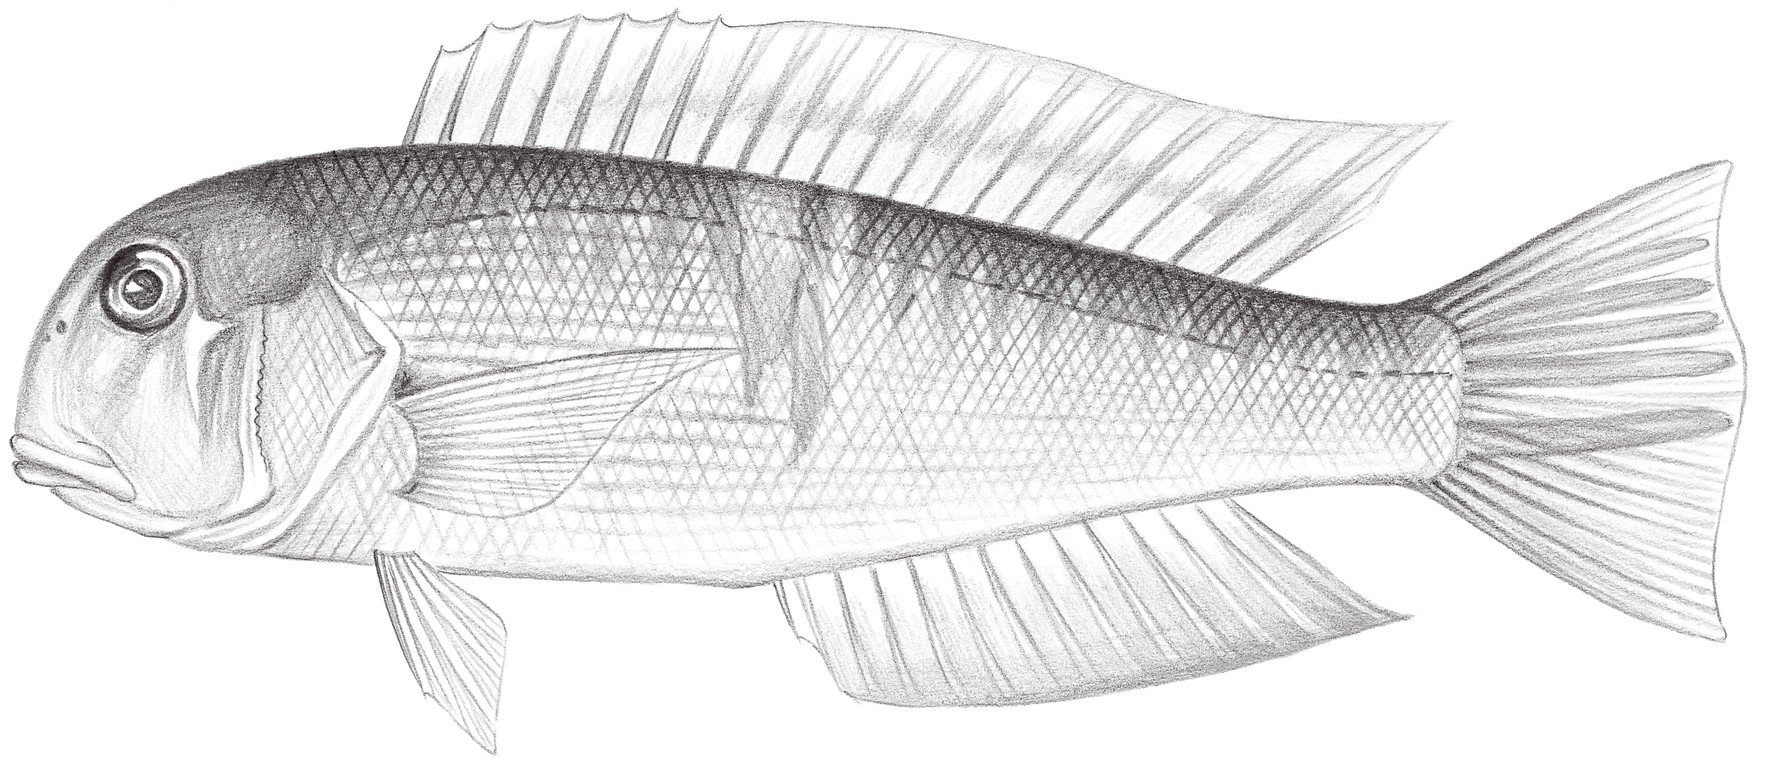 1221.	日本馬頭魚 Branchiostegus japonicus (Houttuyn, 1782)